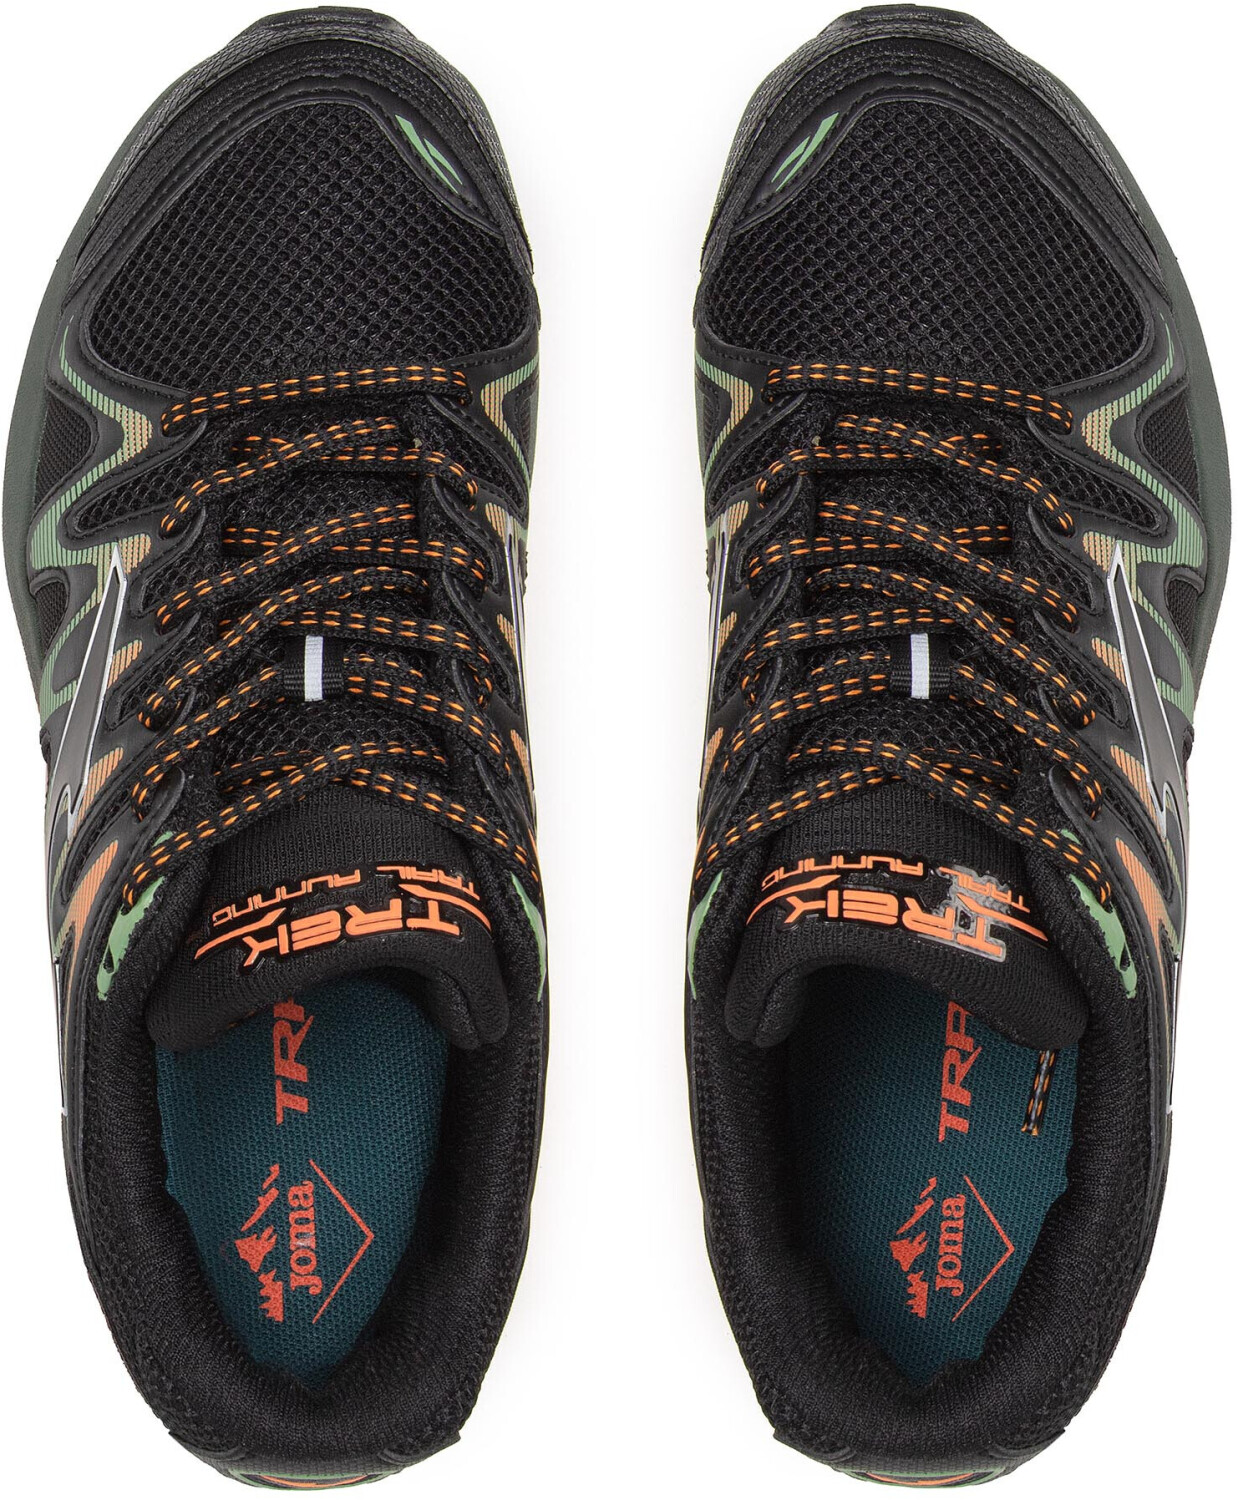 Zapatillas deportivas sneaker de hombre JOMA trek men 2231 color